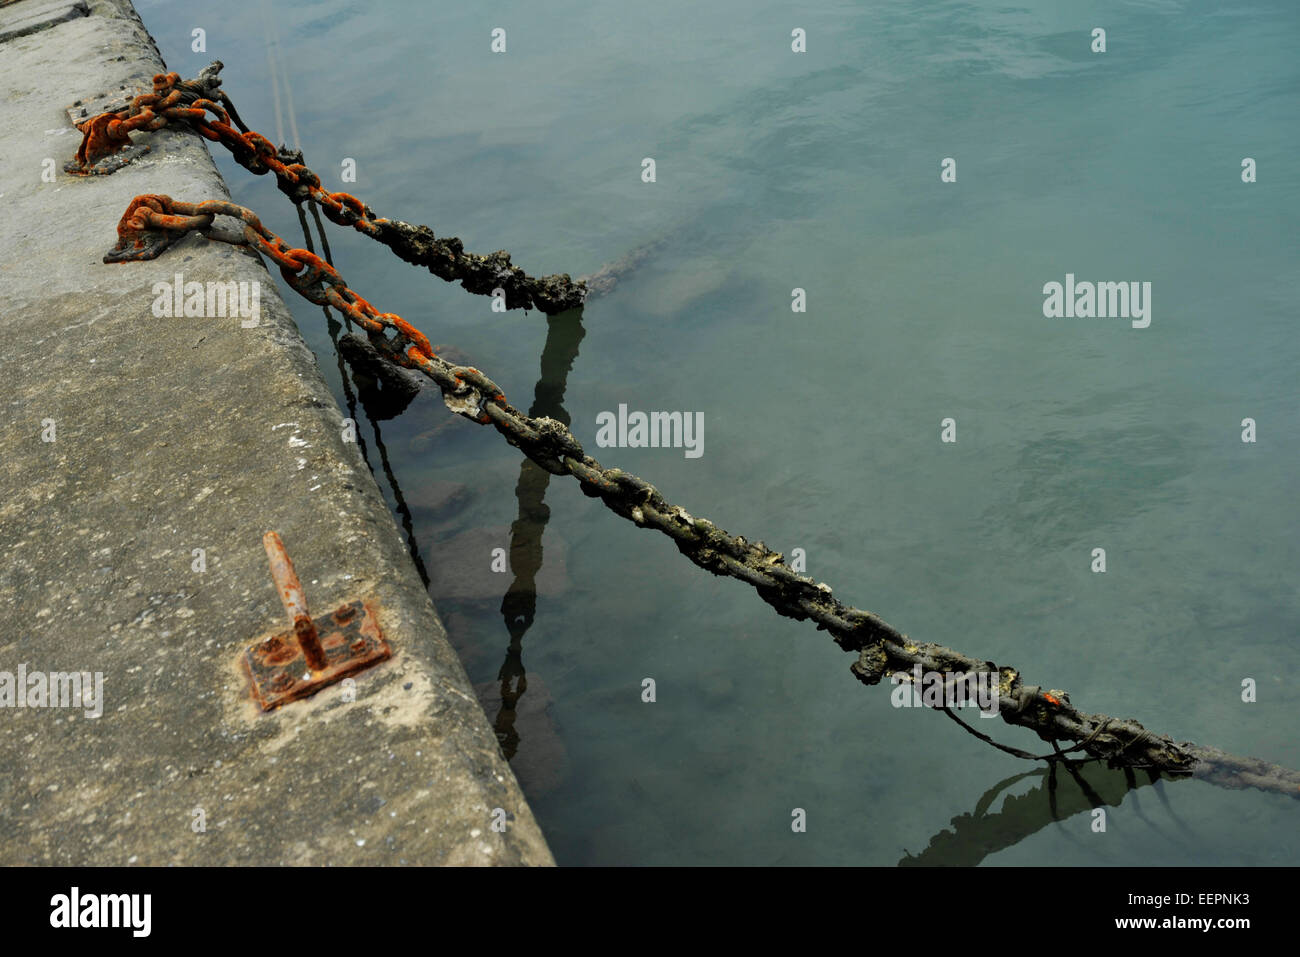 Scène de l'atmosphère de deux chaînes sale rusty fixé au côté quai du port en accrochant des concepts abstraits de la vie Toujours de l'eau Banque D'Images